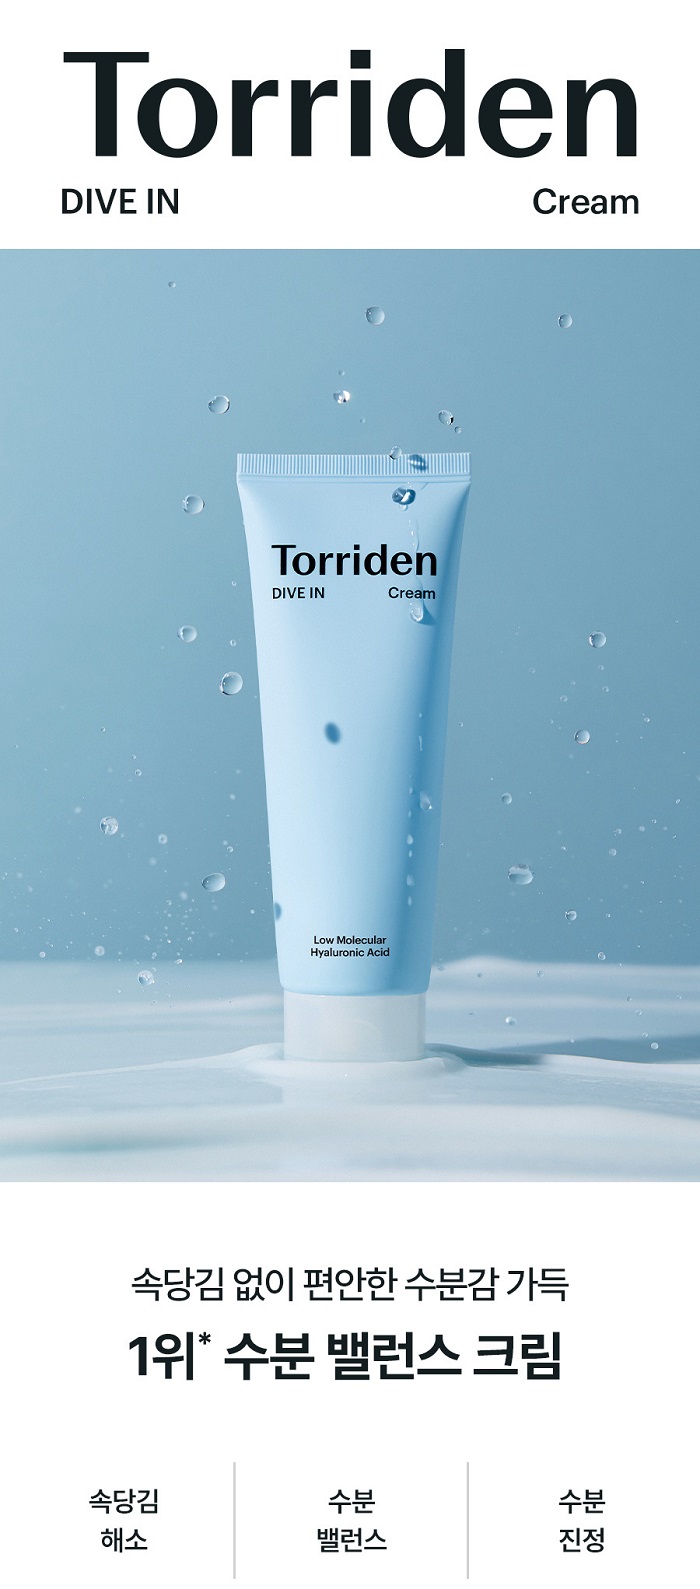 TORRIDEN Dive In Low Molecular Hyaluronic Acid Cream